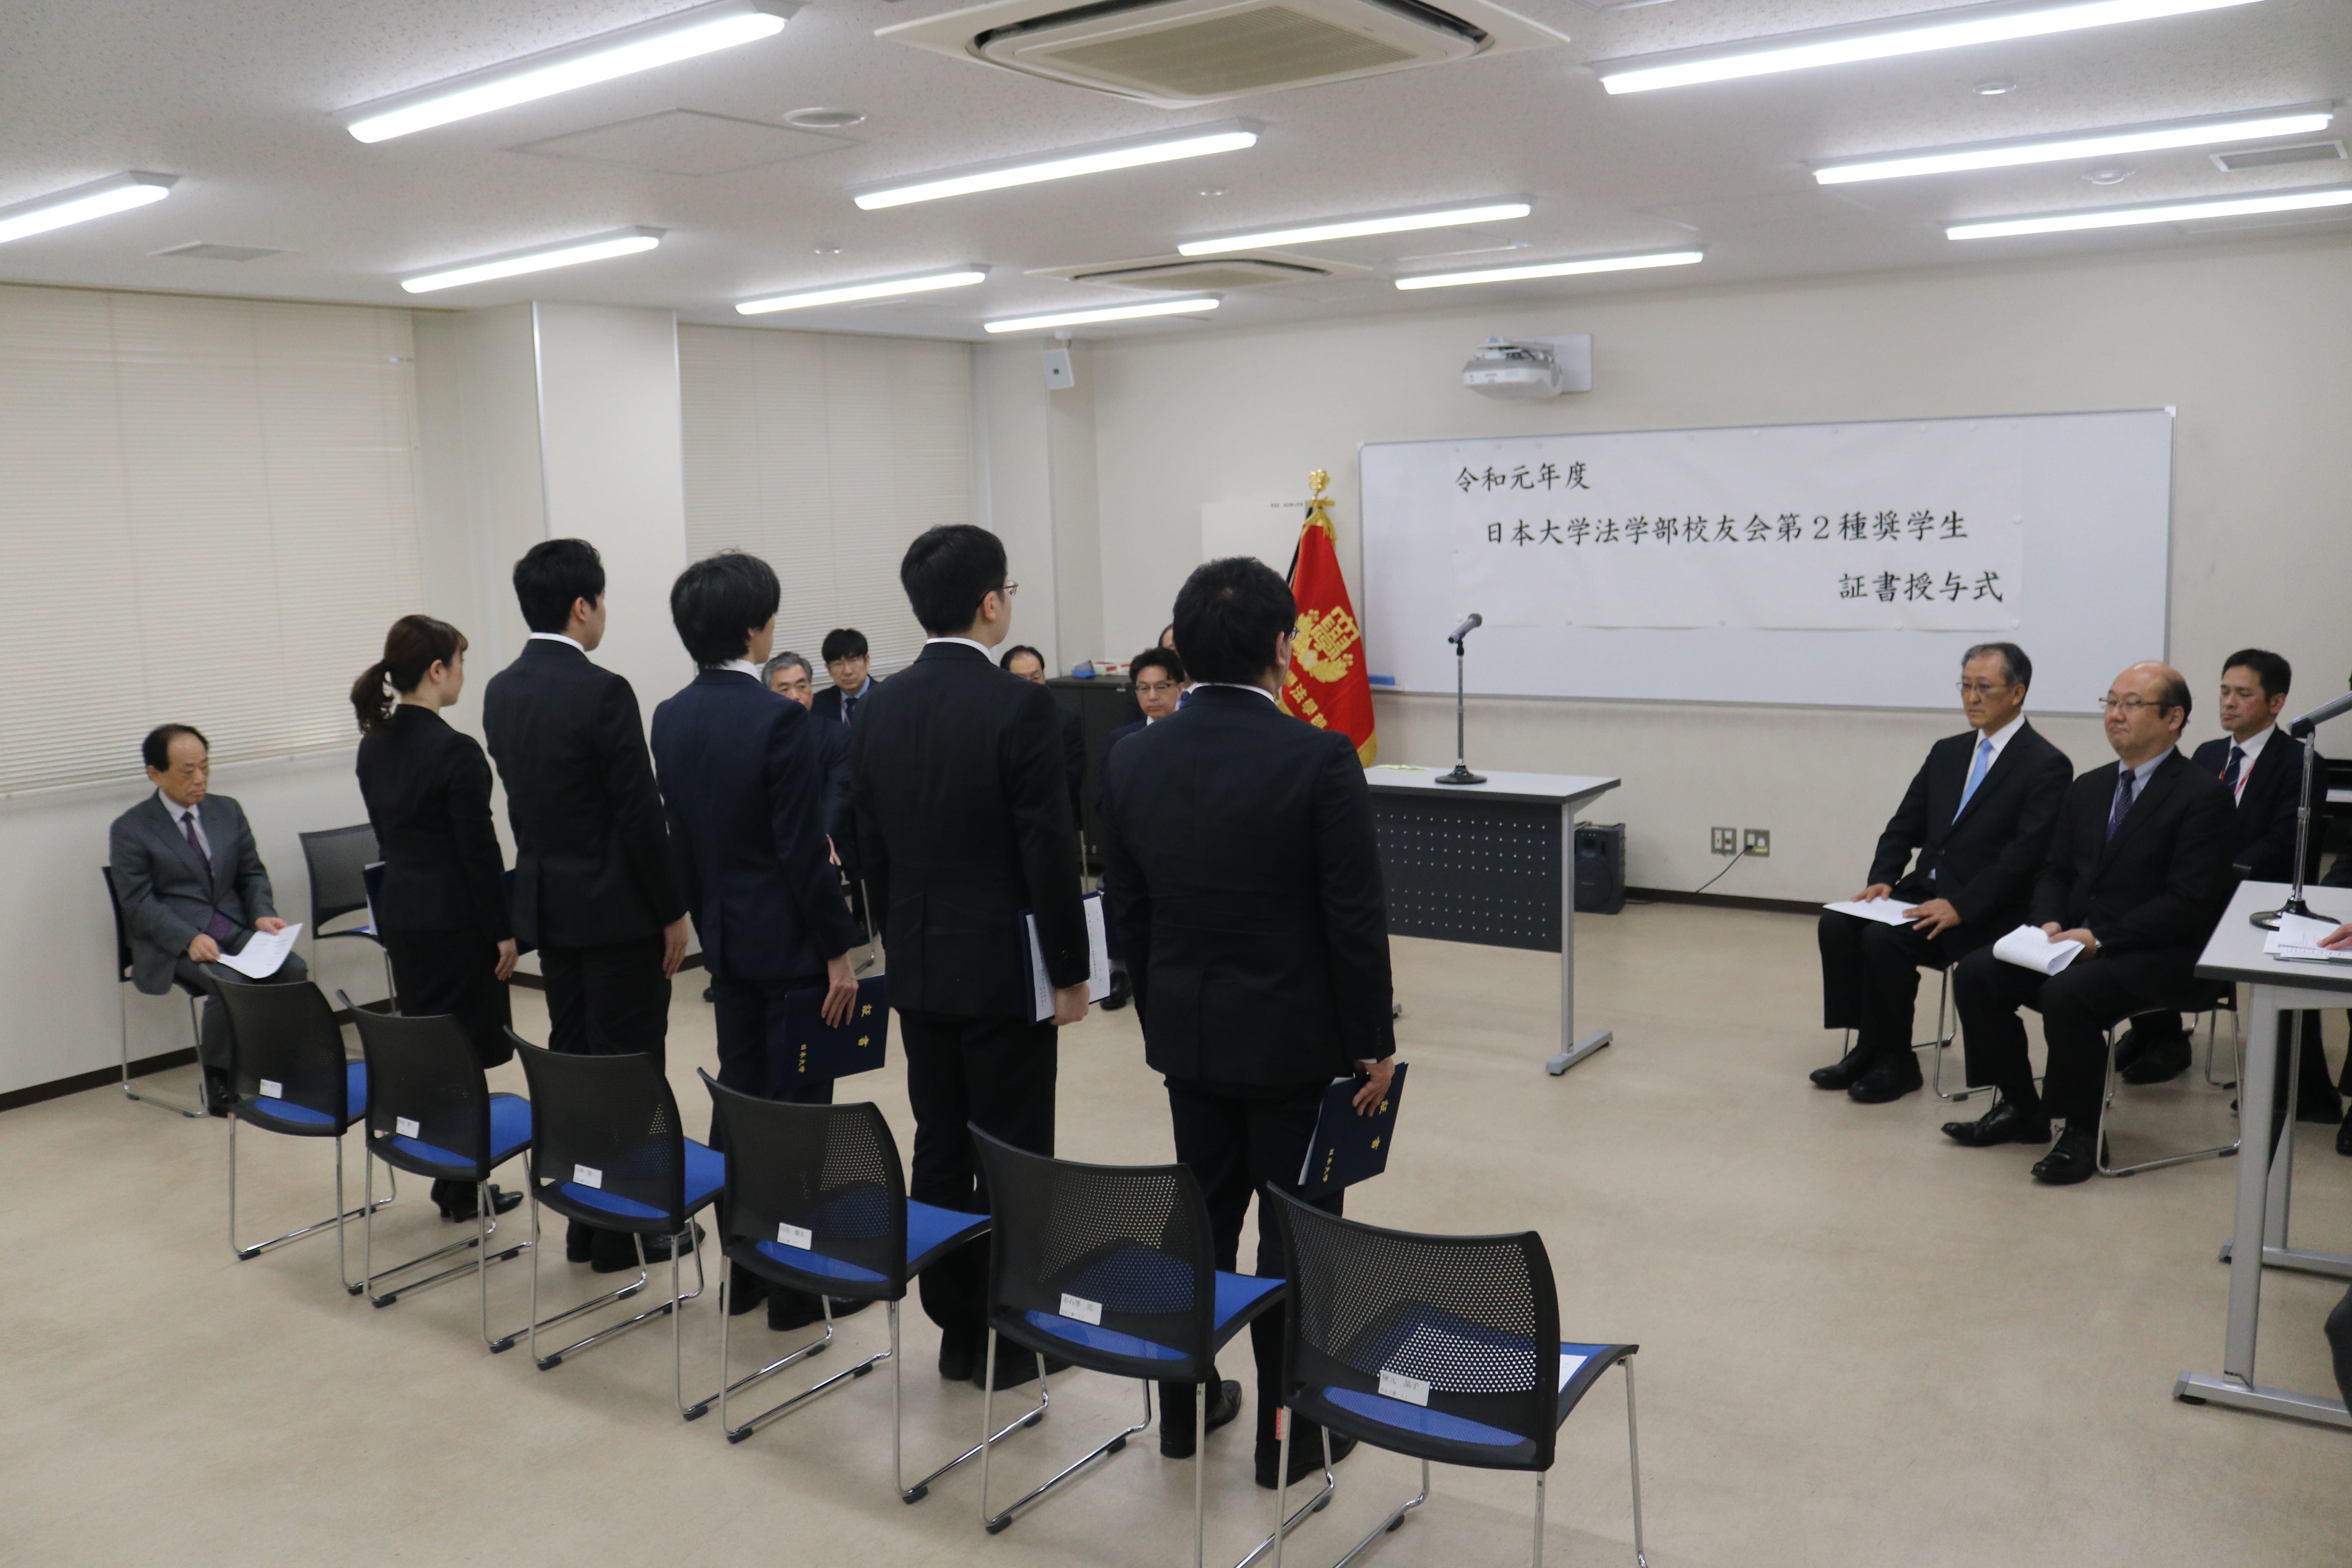 令和元年1月30日 法学部校友会第2種奨学金の授与式